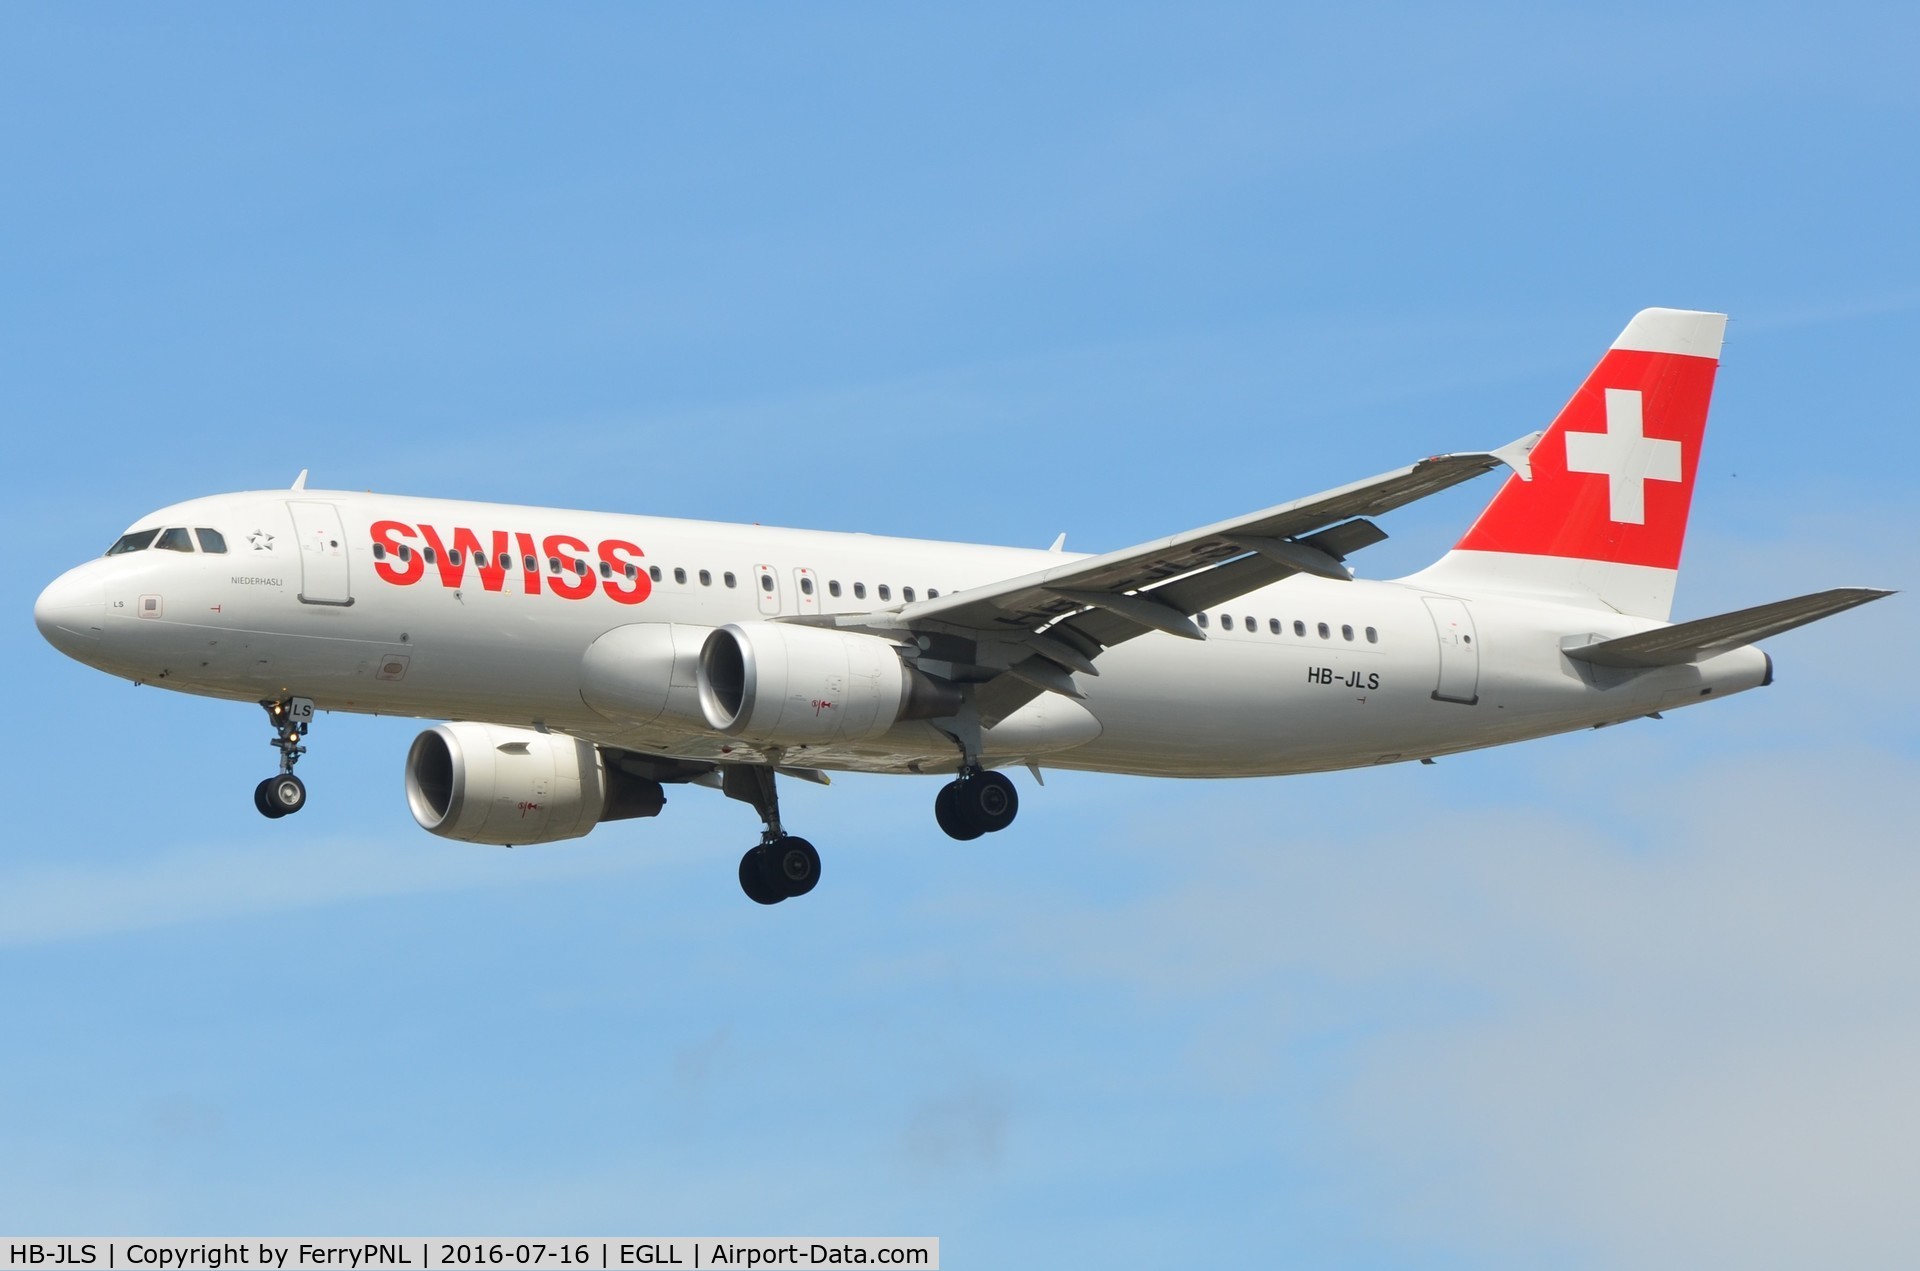 HB-JLS, 2012 Airbus A320-214 C/N 5069, Swiss A320 landing in London